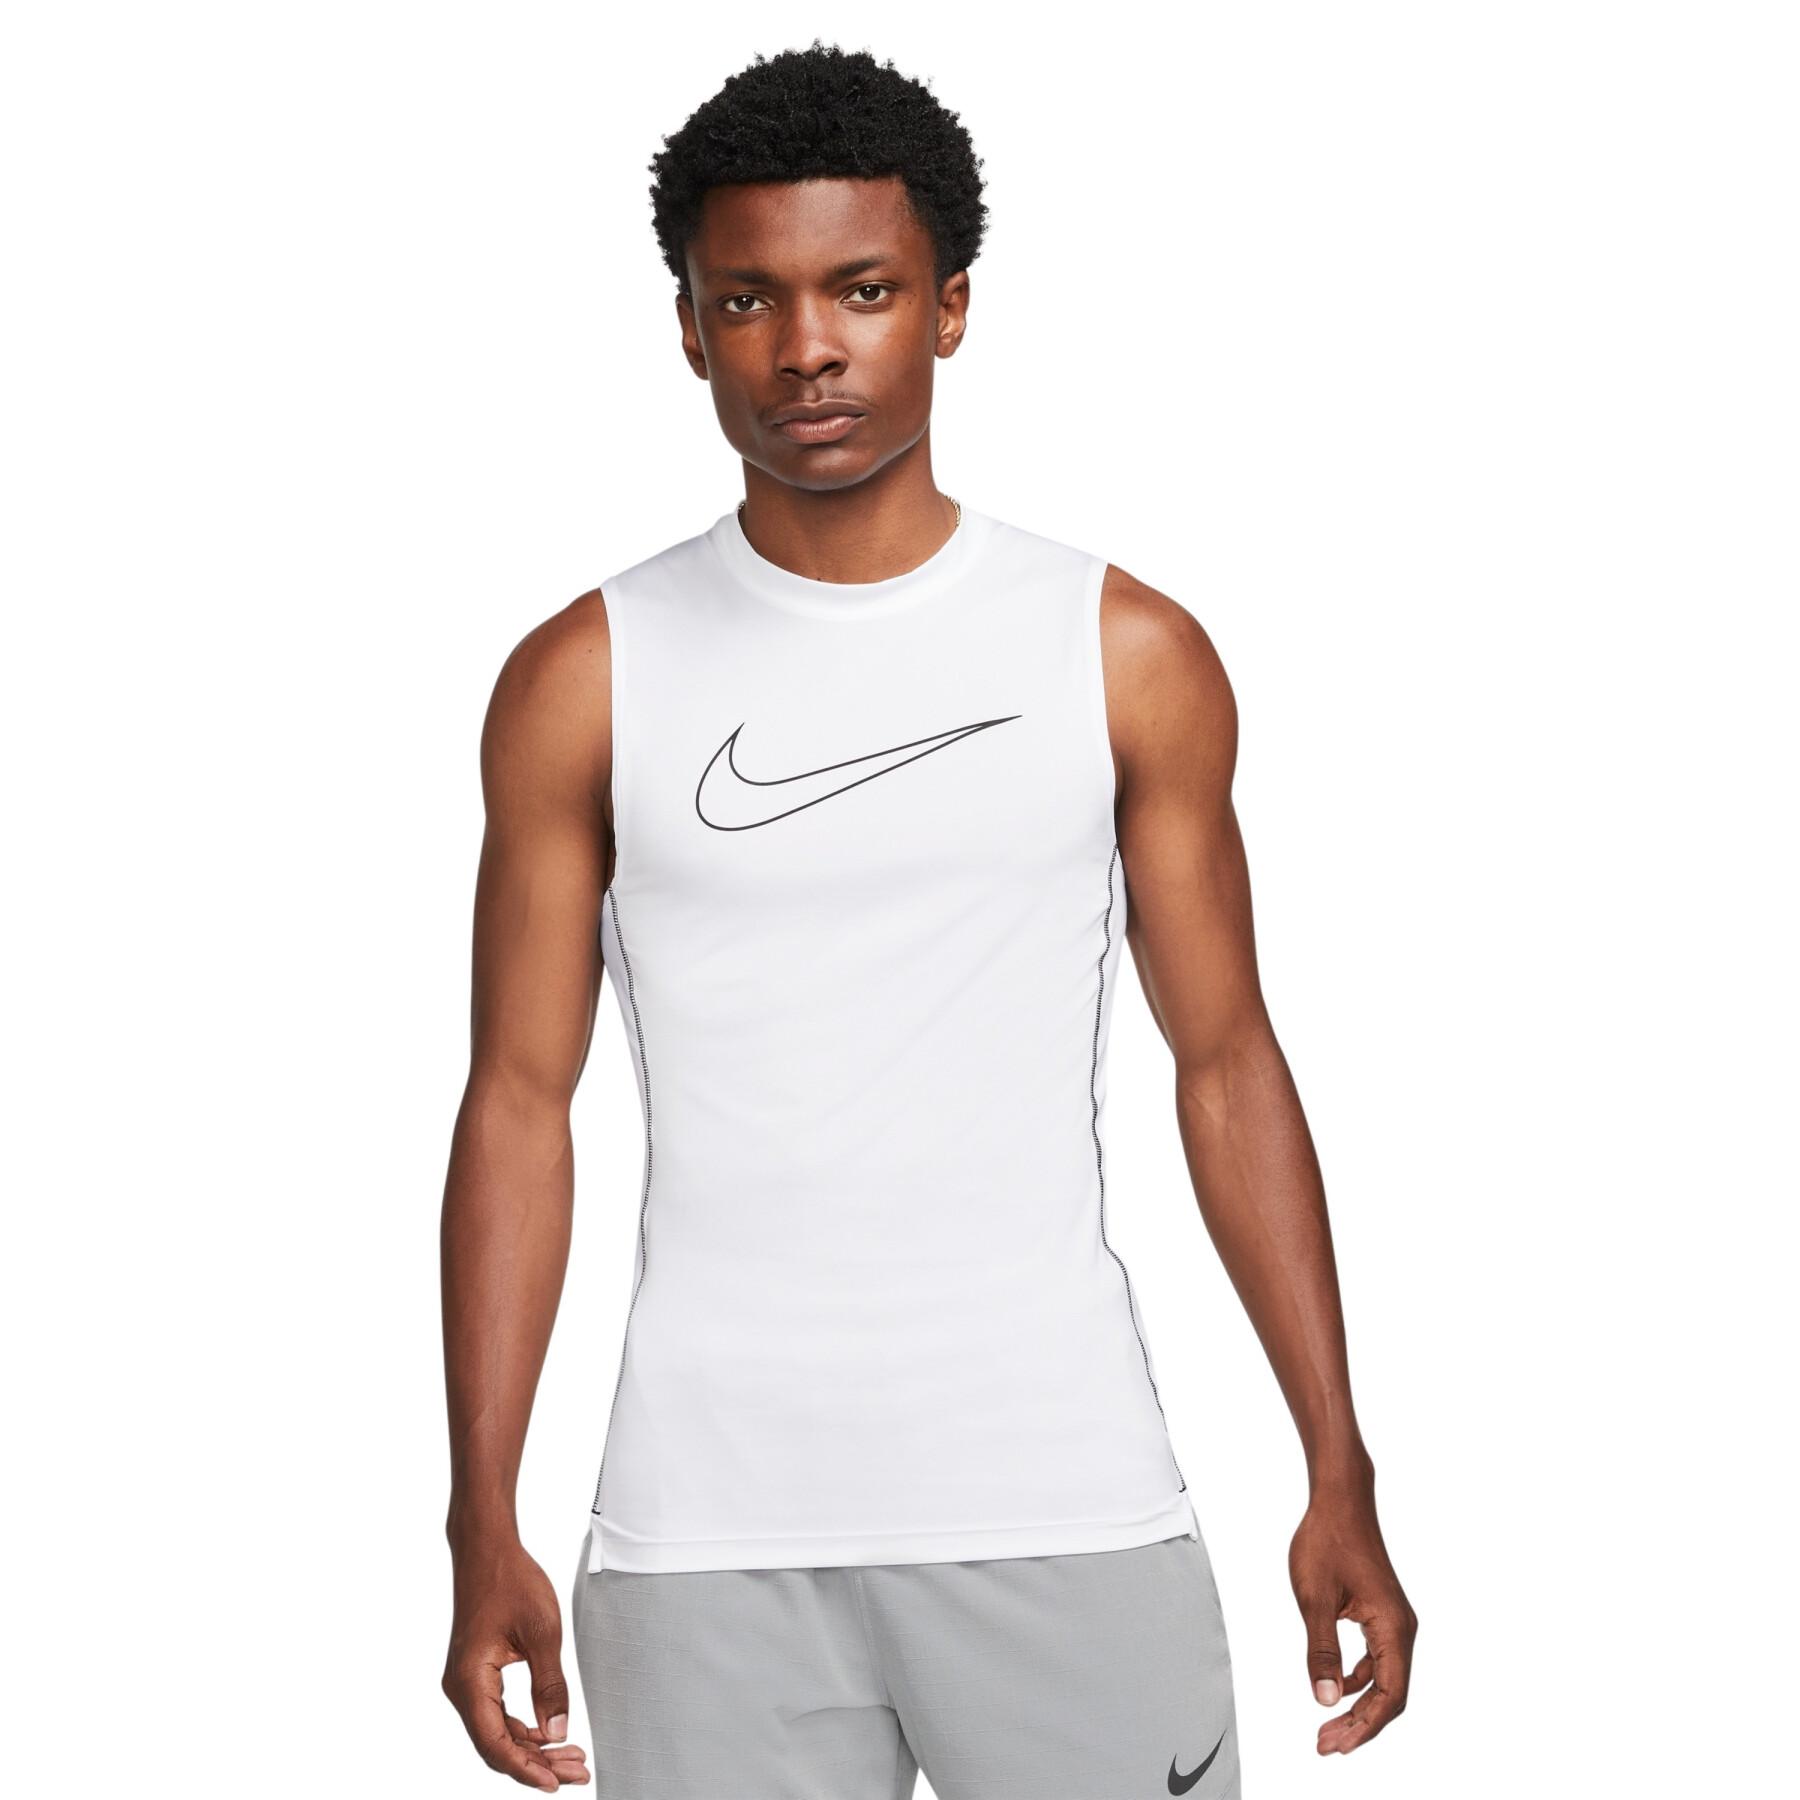 Sleeveless compression jersey Nike NP Dri-Fit - Teamwear